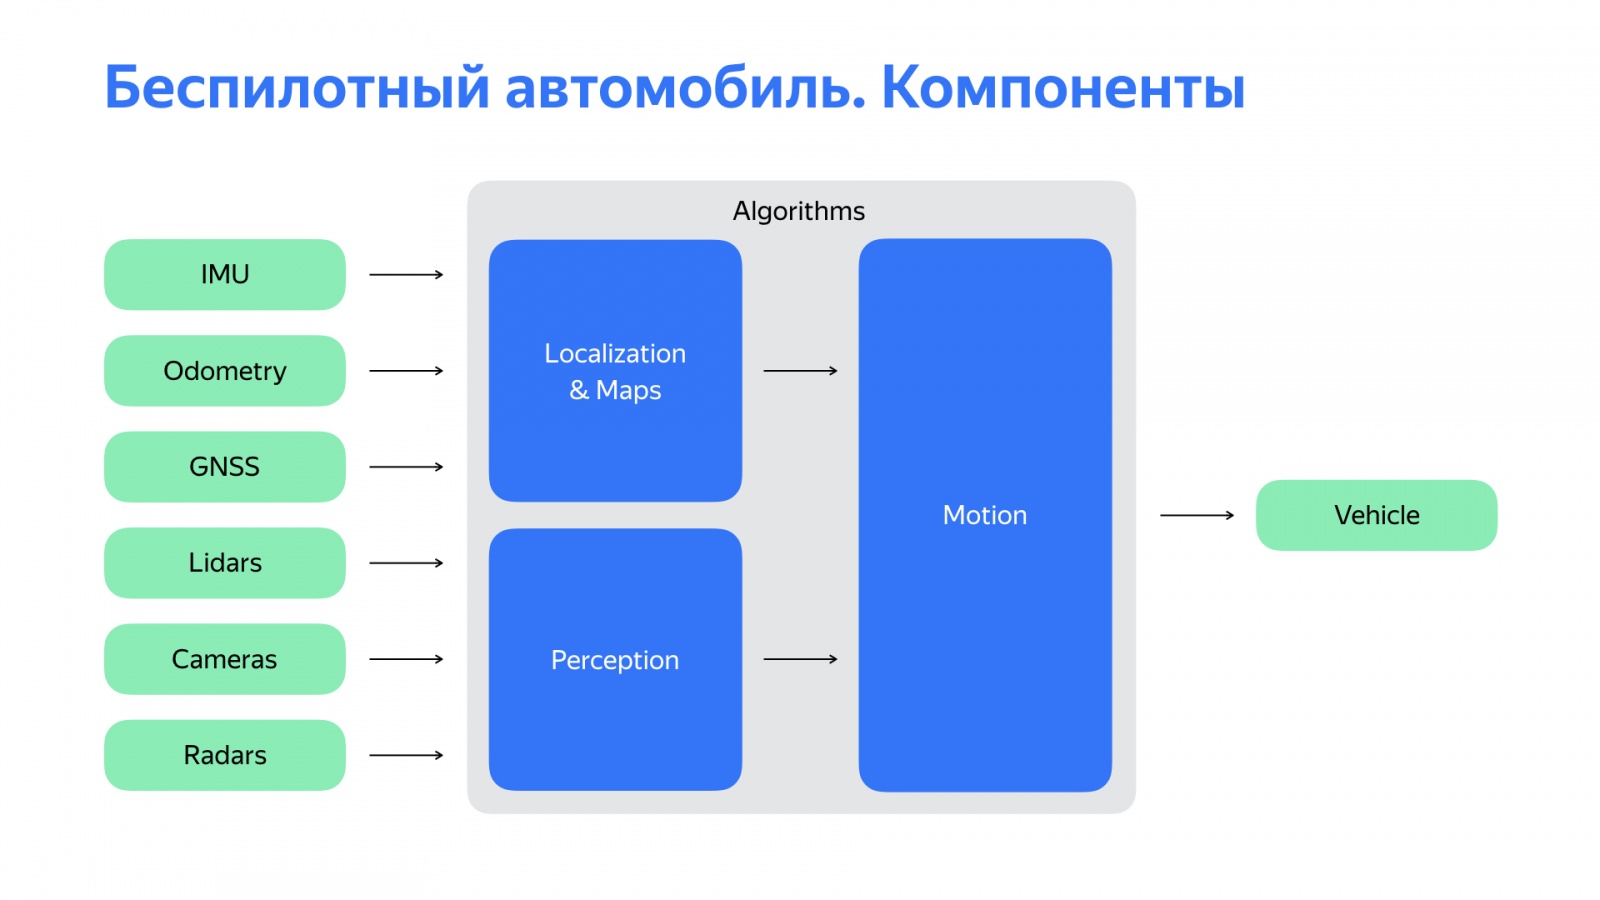 Беспилотный автомобиль: оживляем алгоритмы. Доклад Яндекса - 2